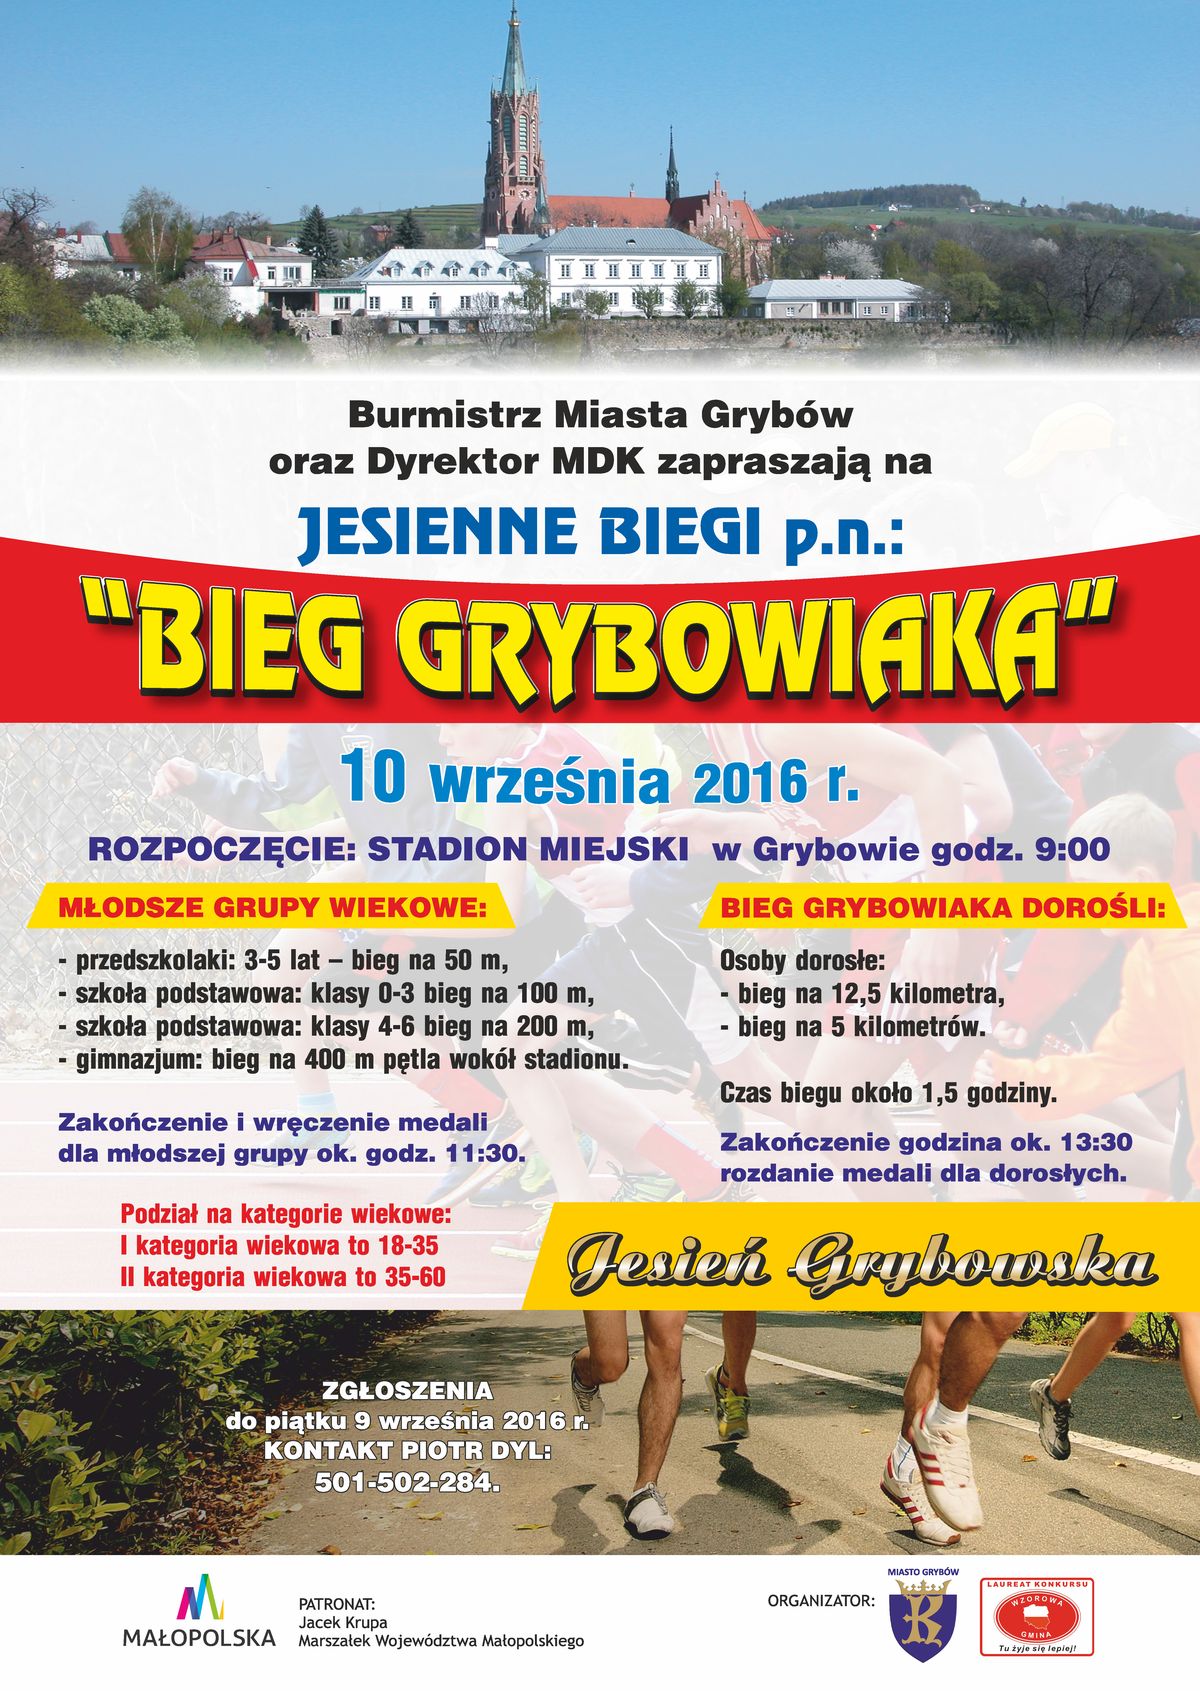 Jesień Grybowska 2016: Bieg Grybowiaka